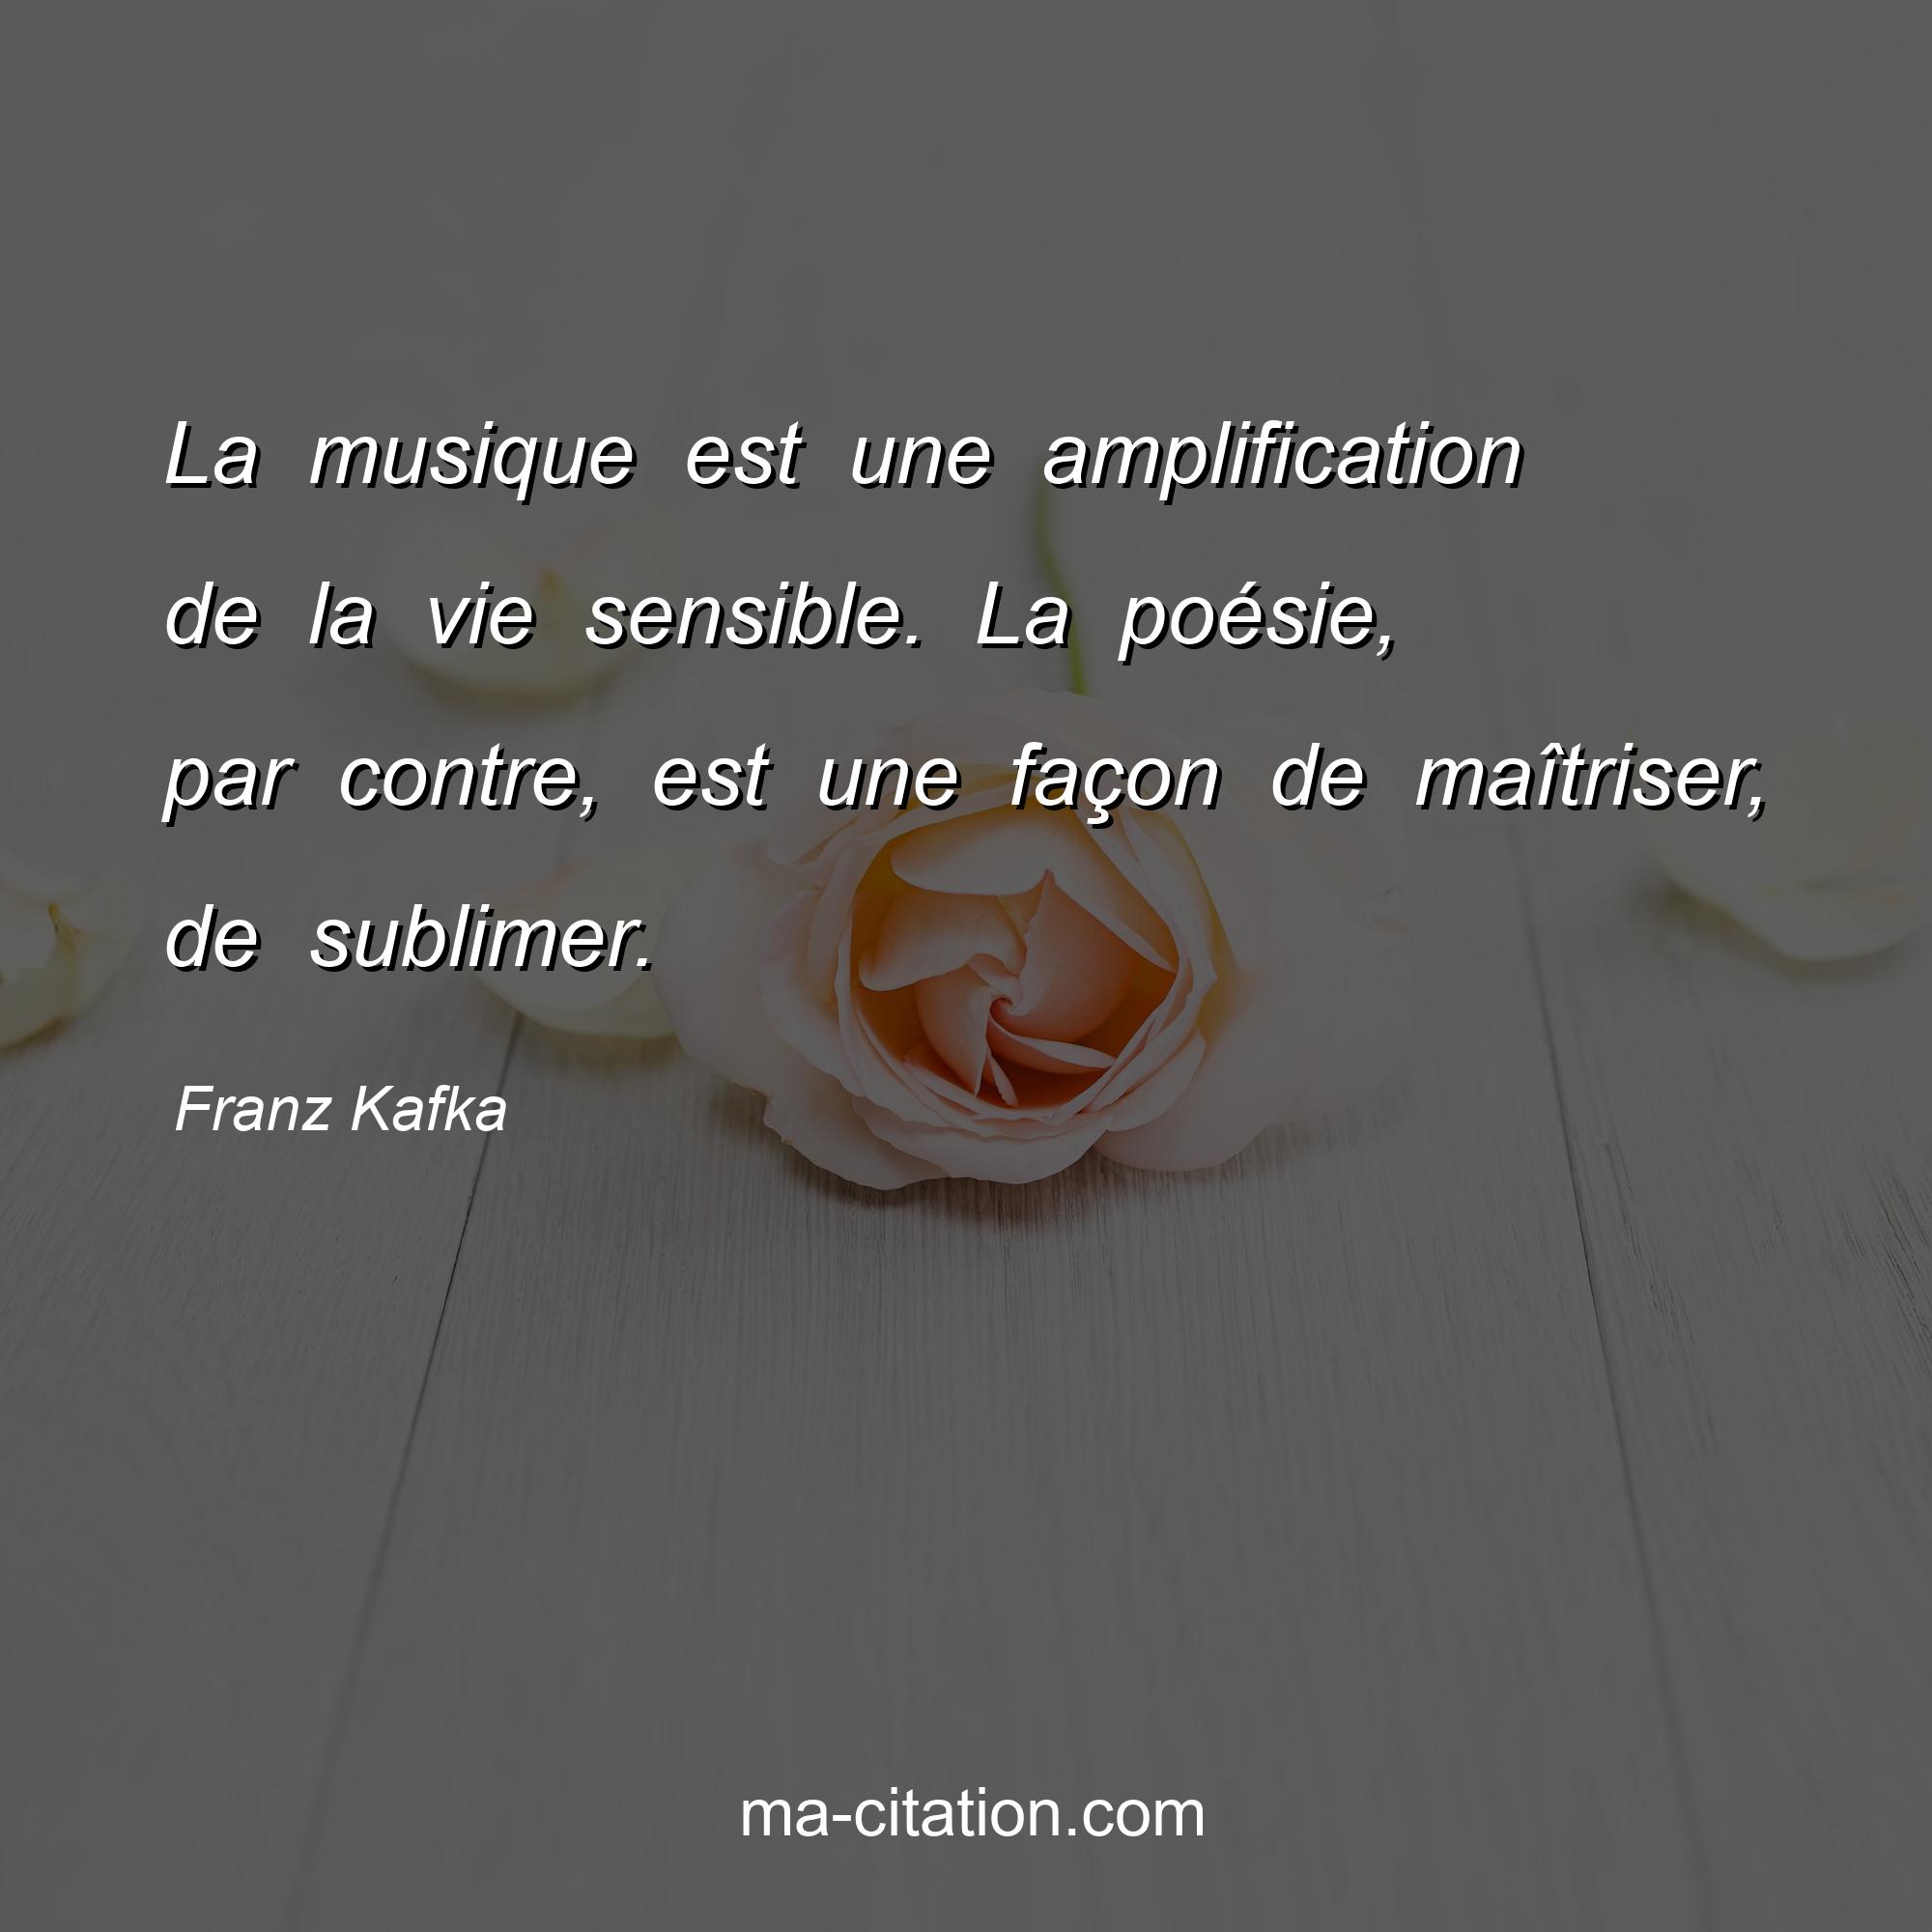 Franz Kafka : La musique est une amplification de la vie sensible. La poésie, par contre, est une façon de maîtriser, de sublimer.